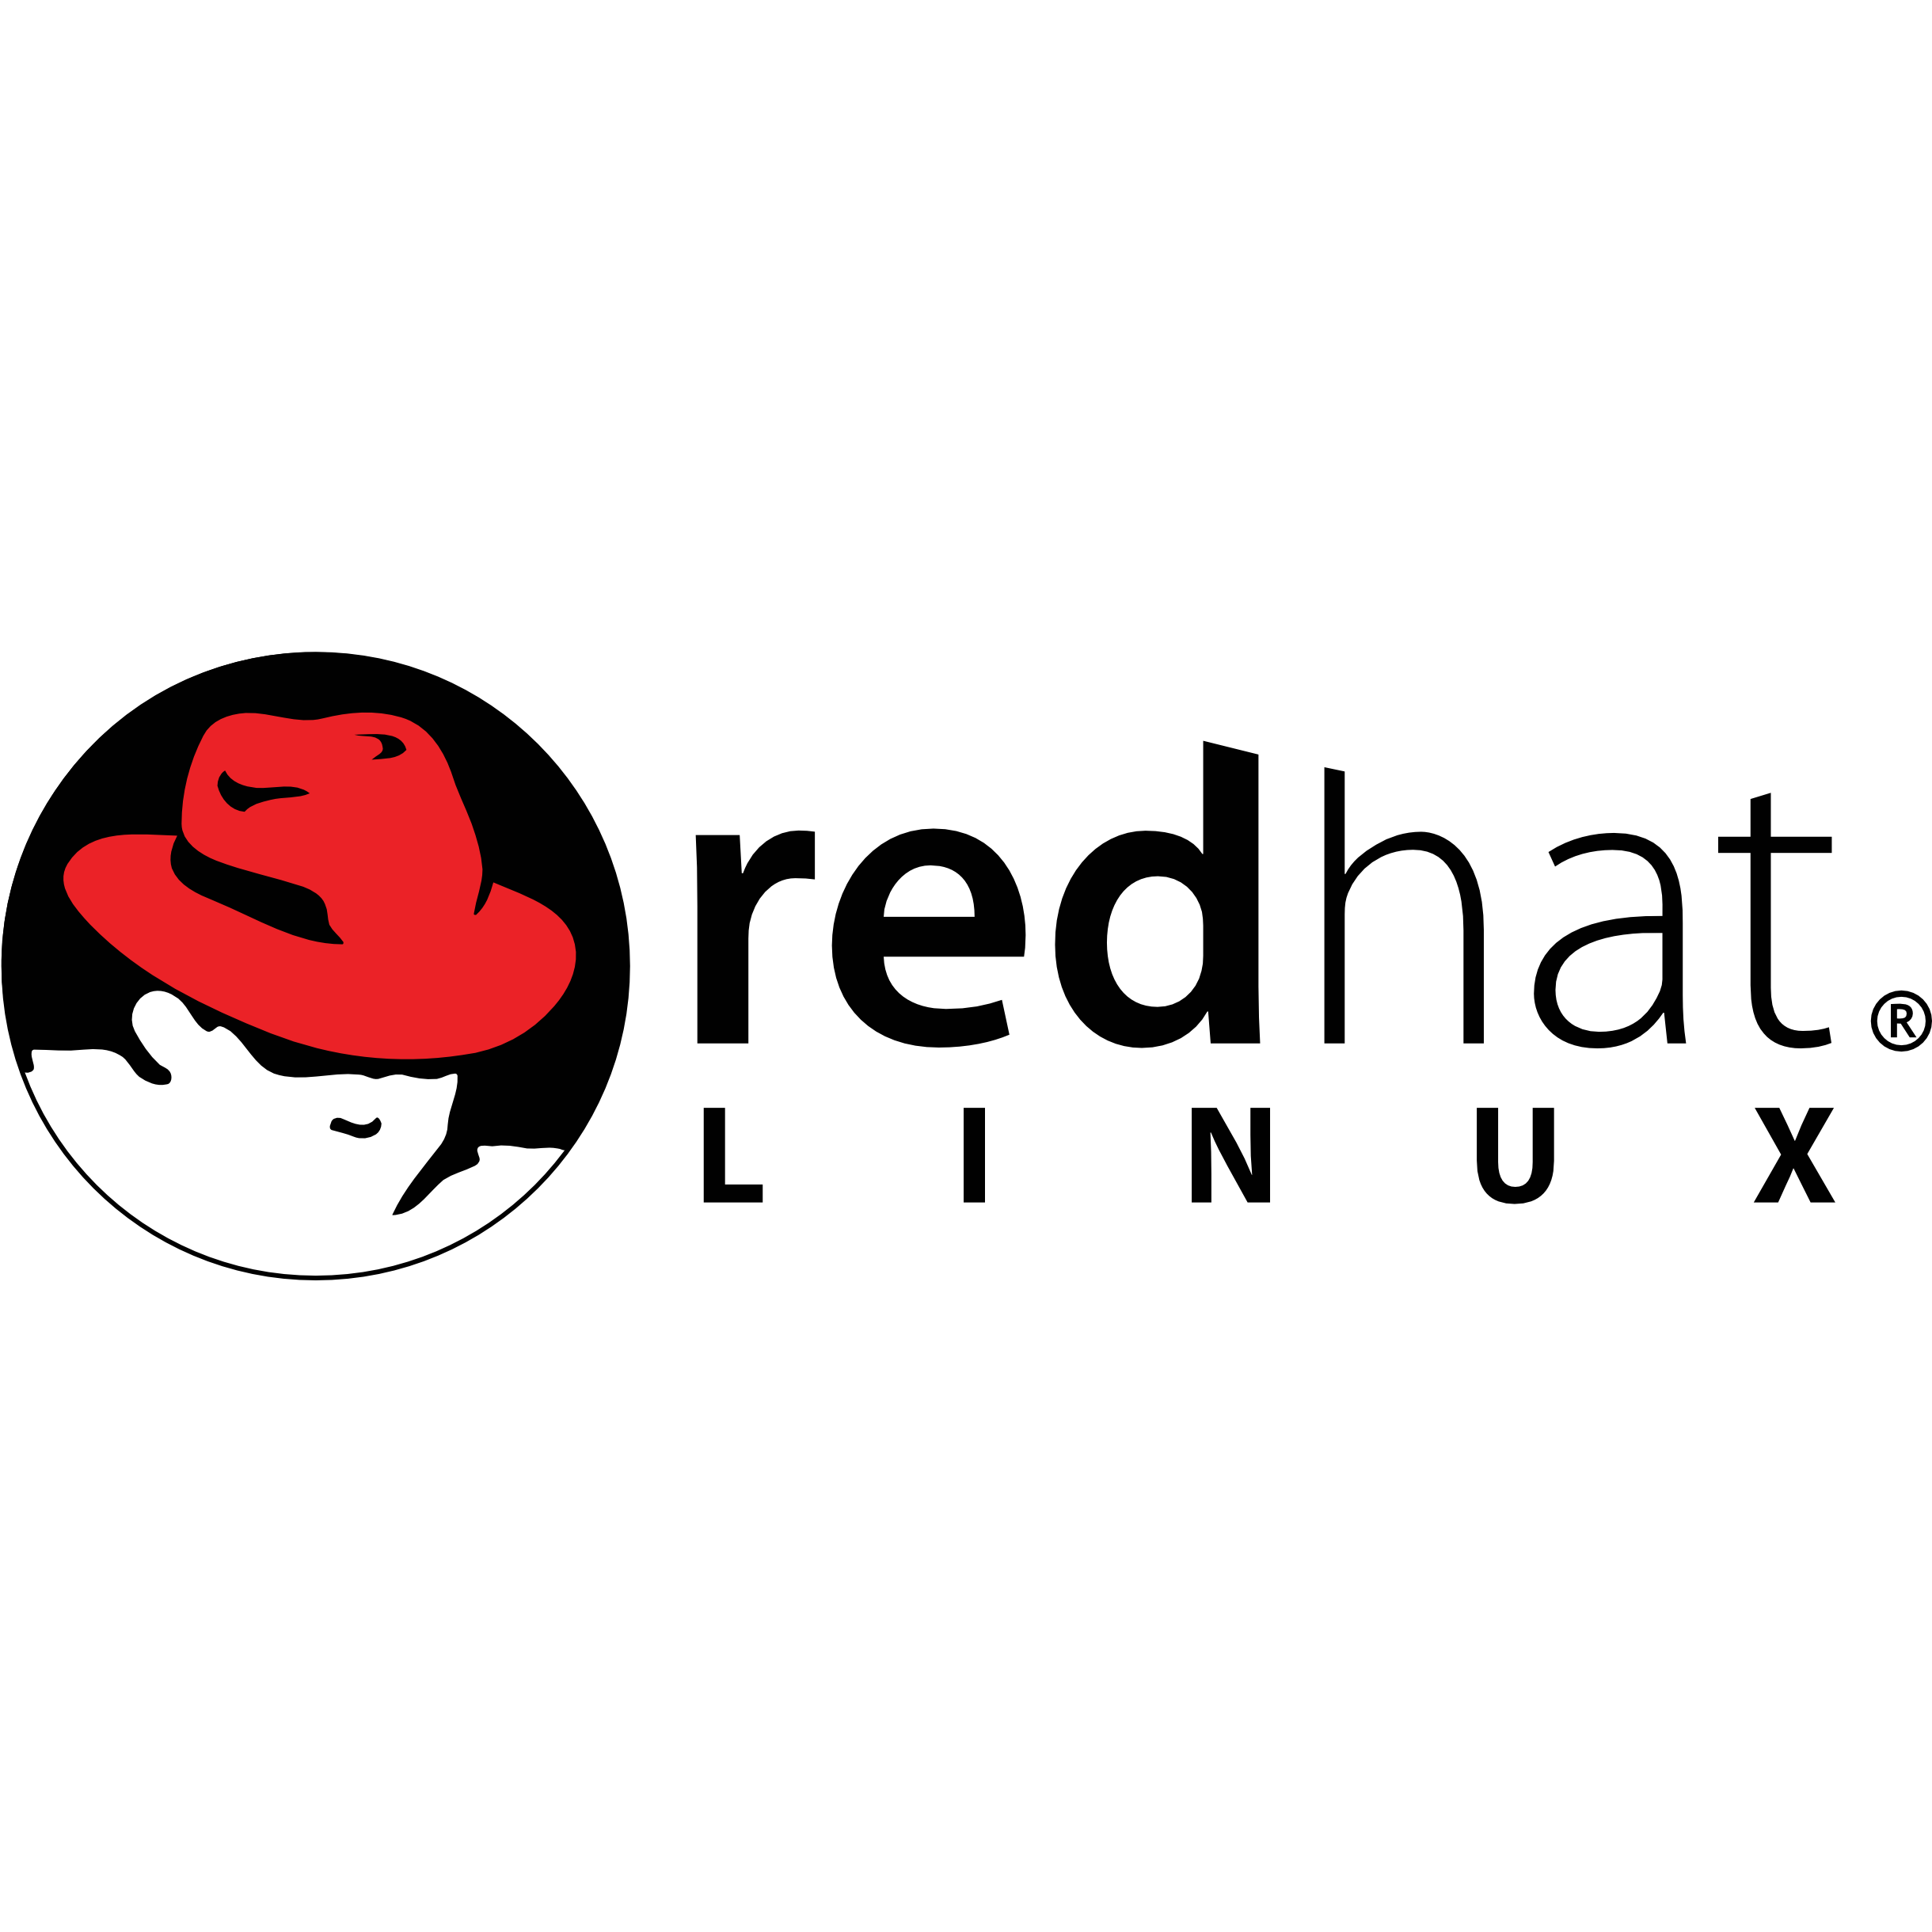 Red hat 8. Red hat. Red hat logo. Red hat Linux. Red hat Enterprise Linux.